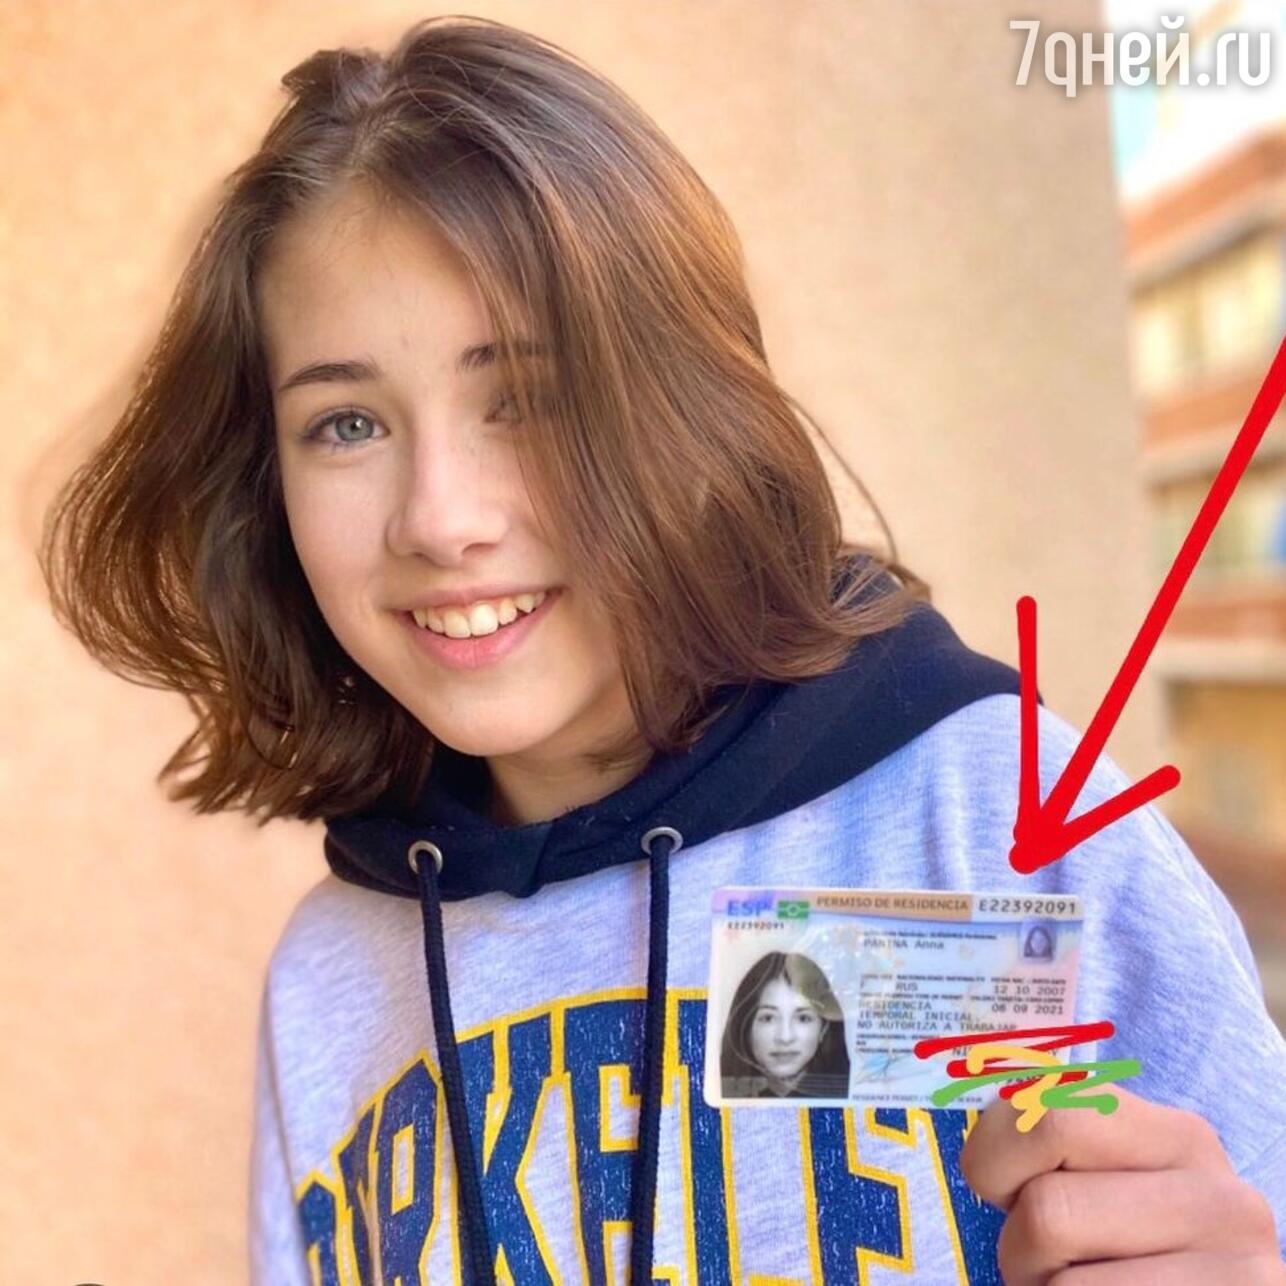 Нюсенька все краше и краше»: 13-летняя дочь скандалиста Панина поразила  своей внешностью - 7Дней.ру